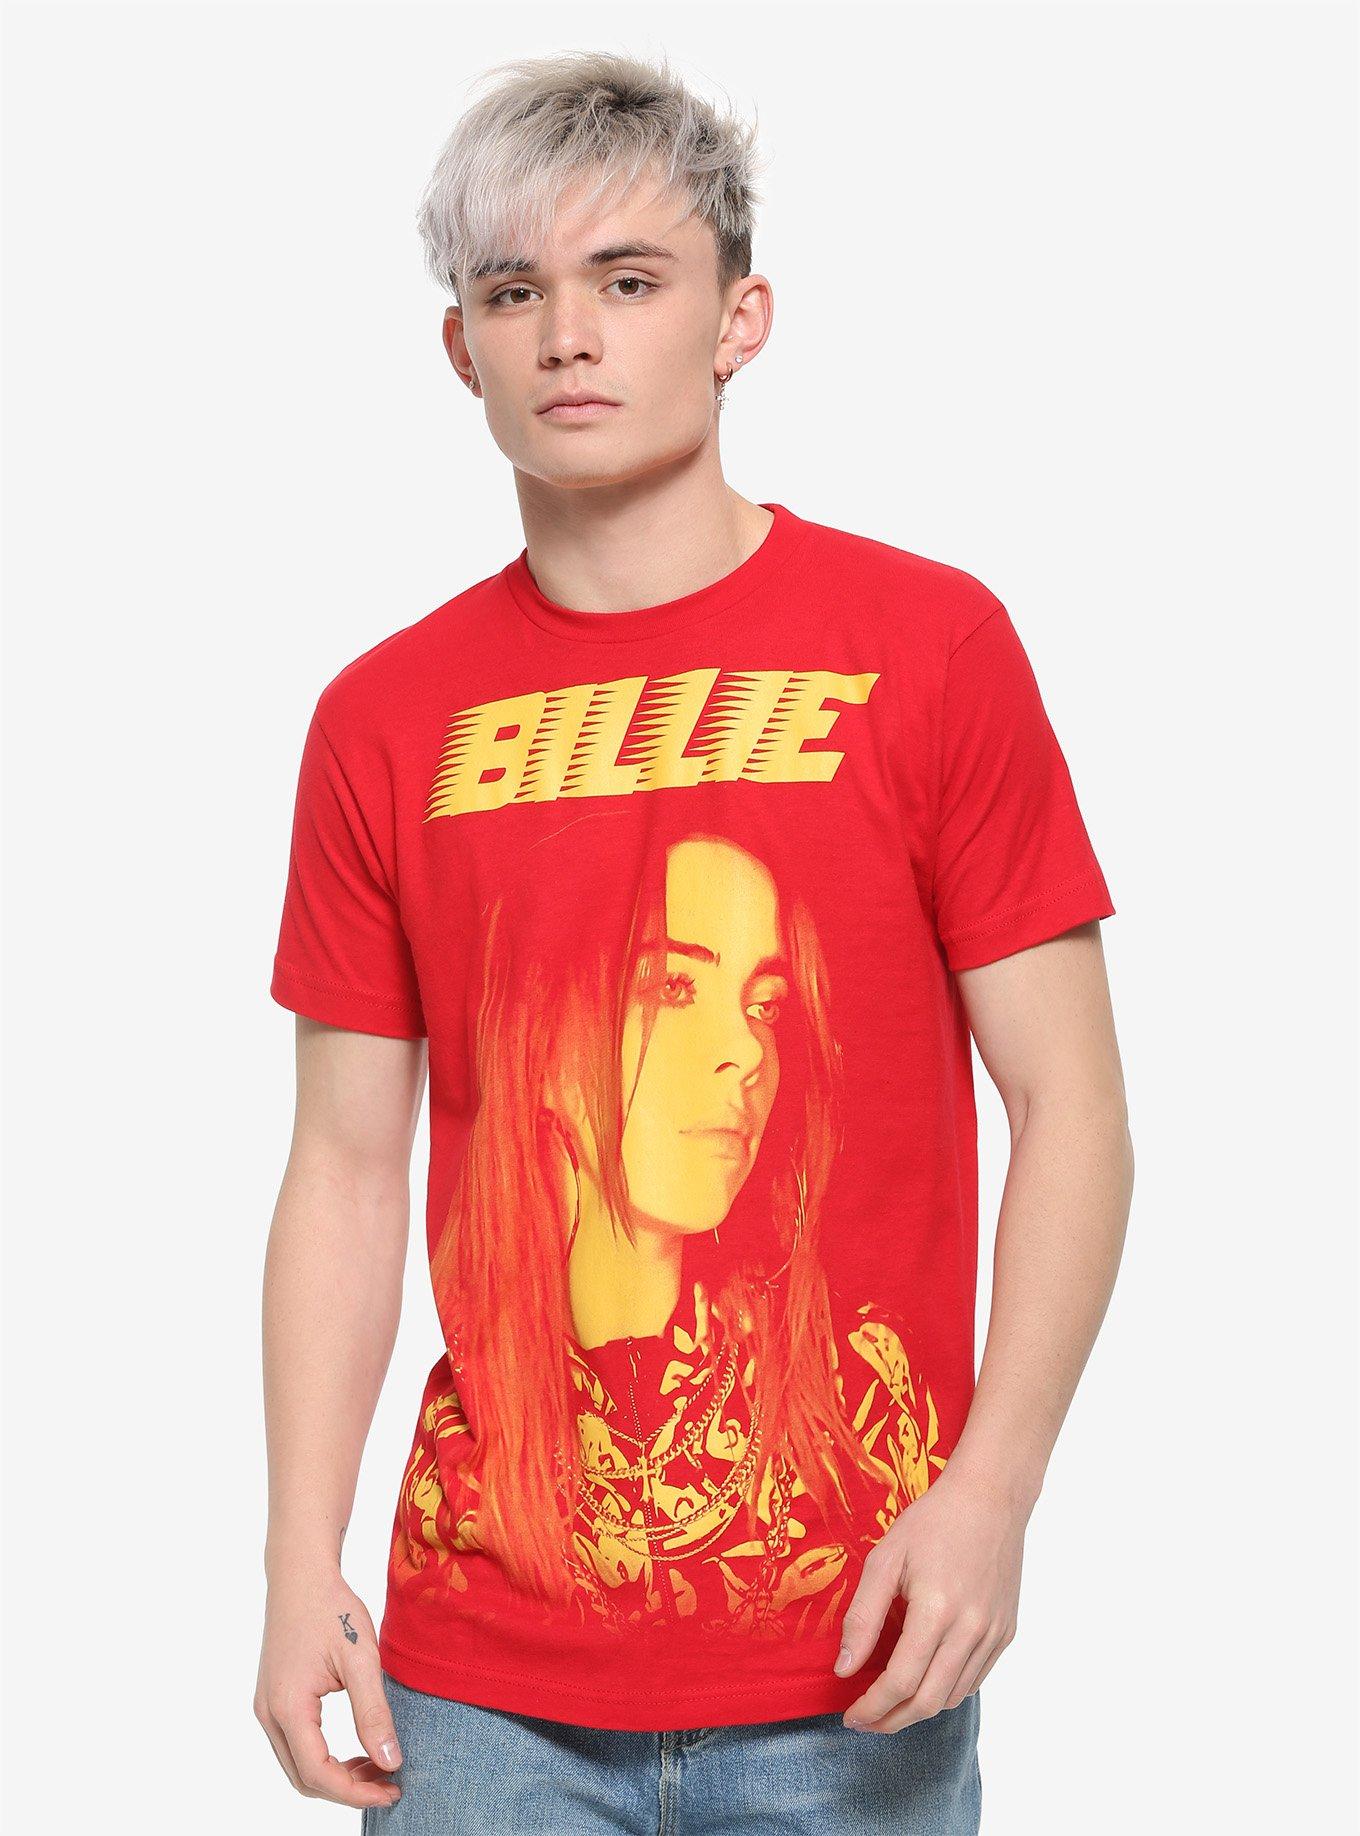 Billie Eilish Orange Portrait T-Shirt, RED, alternate